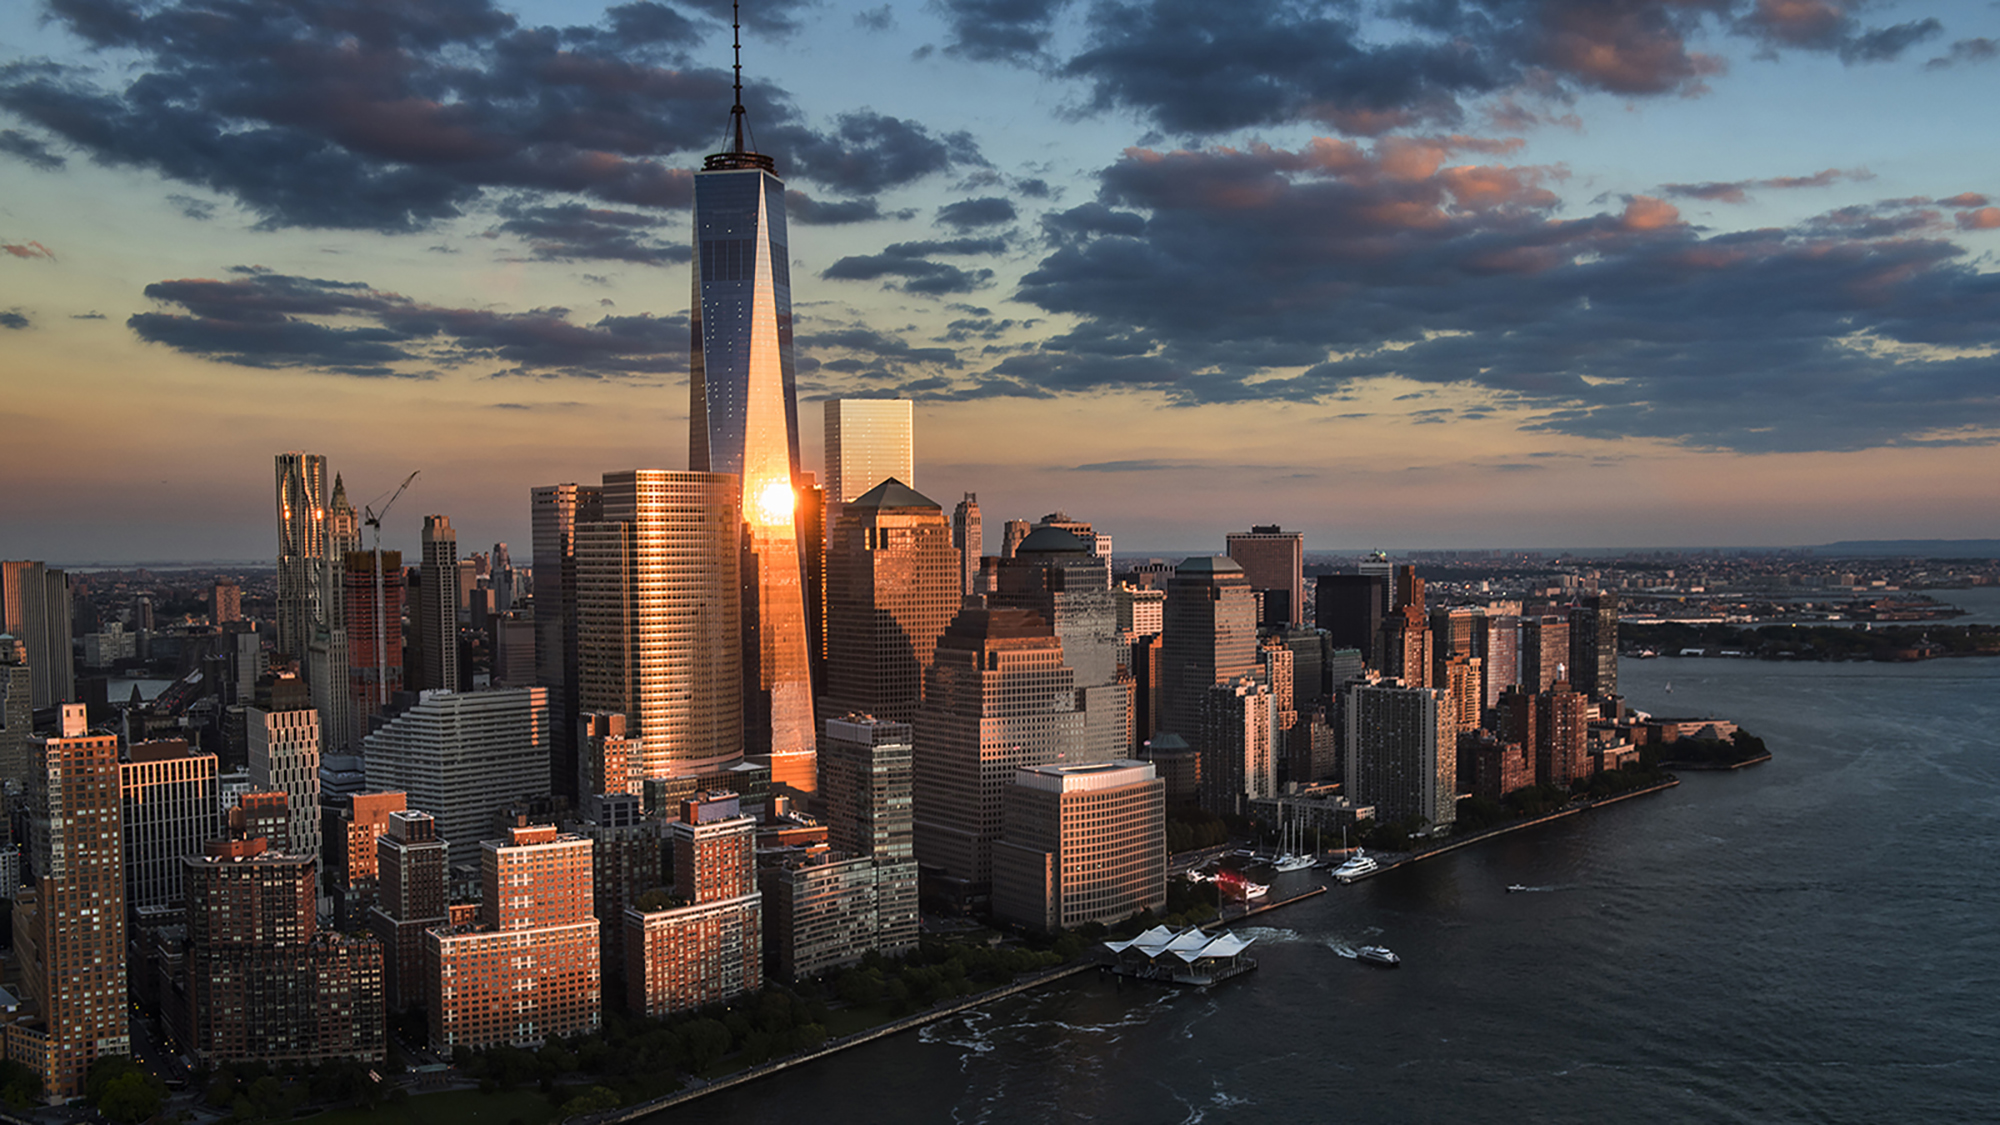 Branże budowlane obsługiwane przez MiTek - Widok Nowego Jorku o zmierzchu z lotu ptaka przedstawiający wieżę Freedom ze ścianą kurtynową Bensona